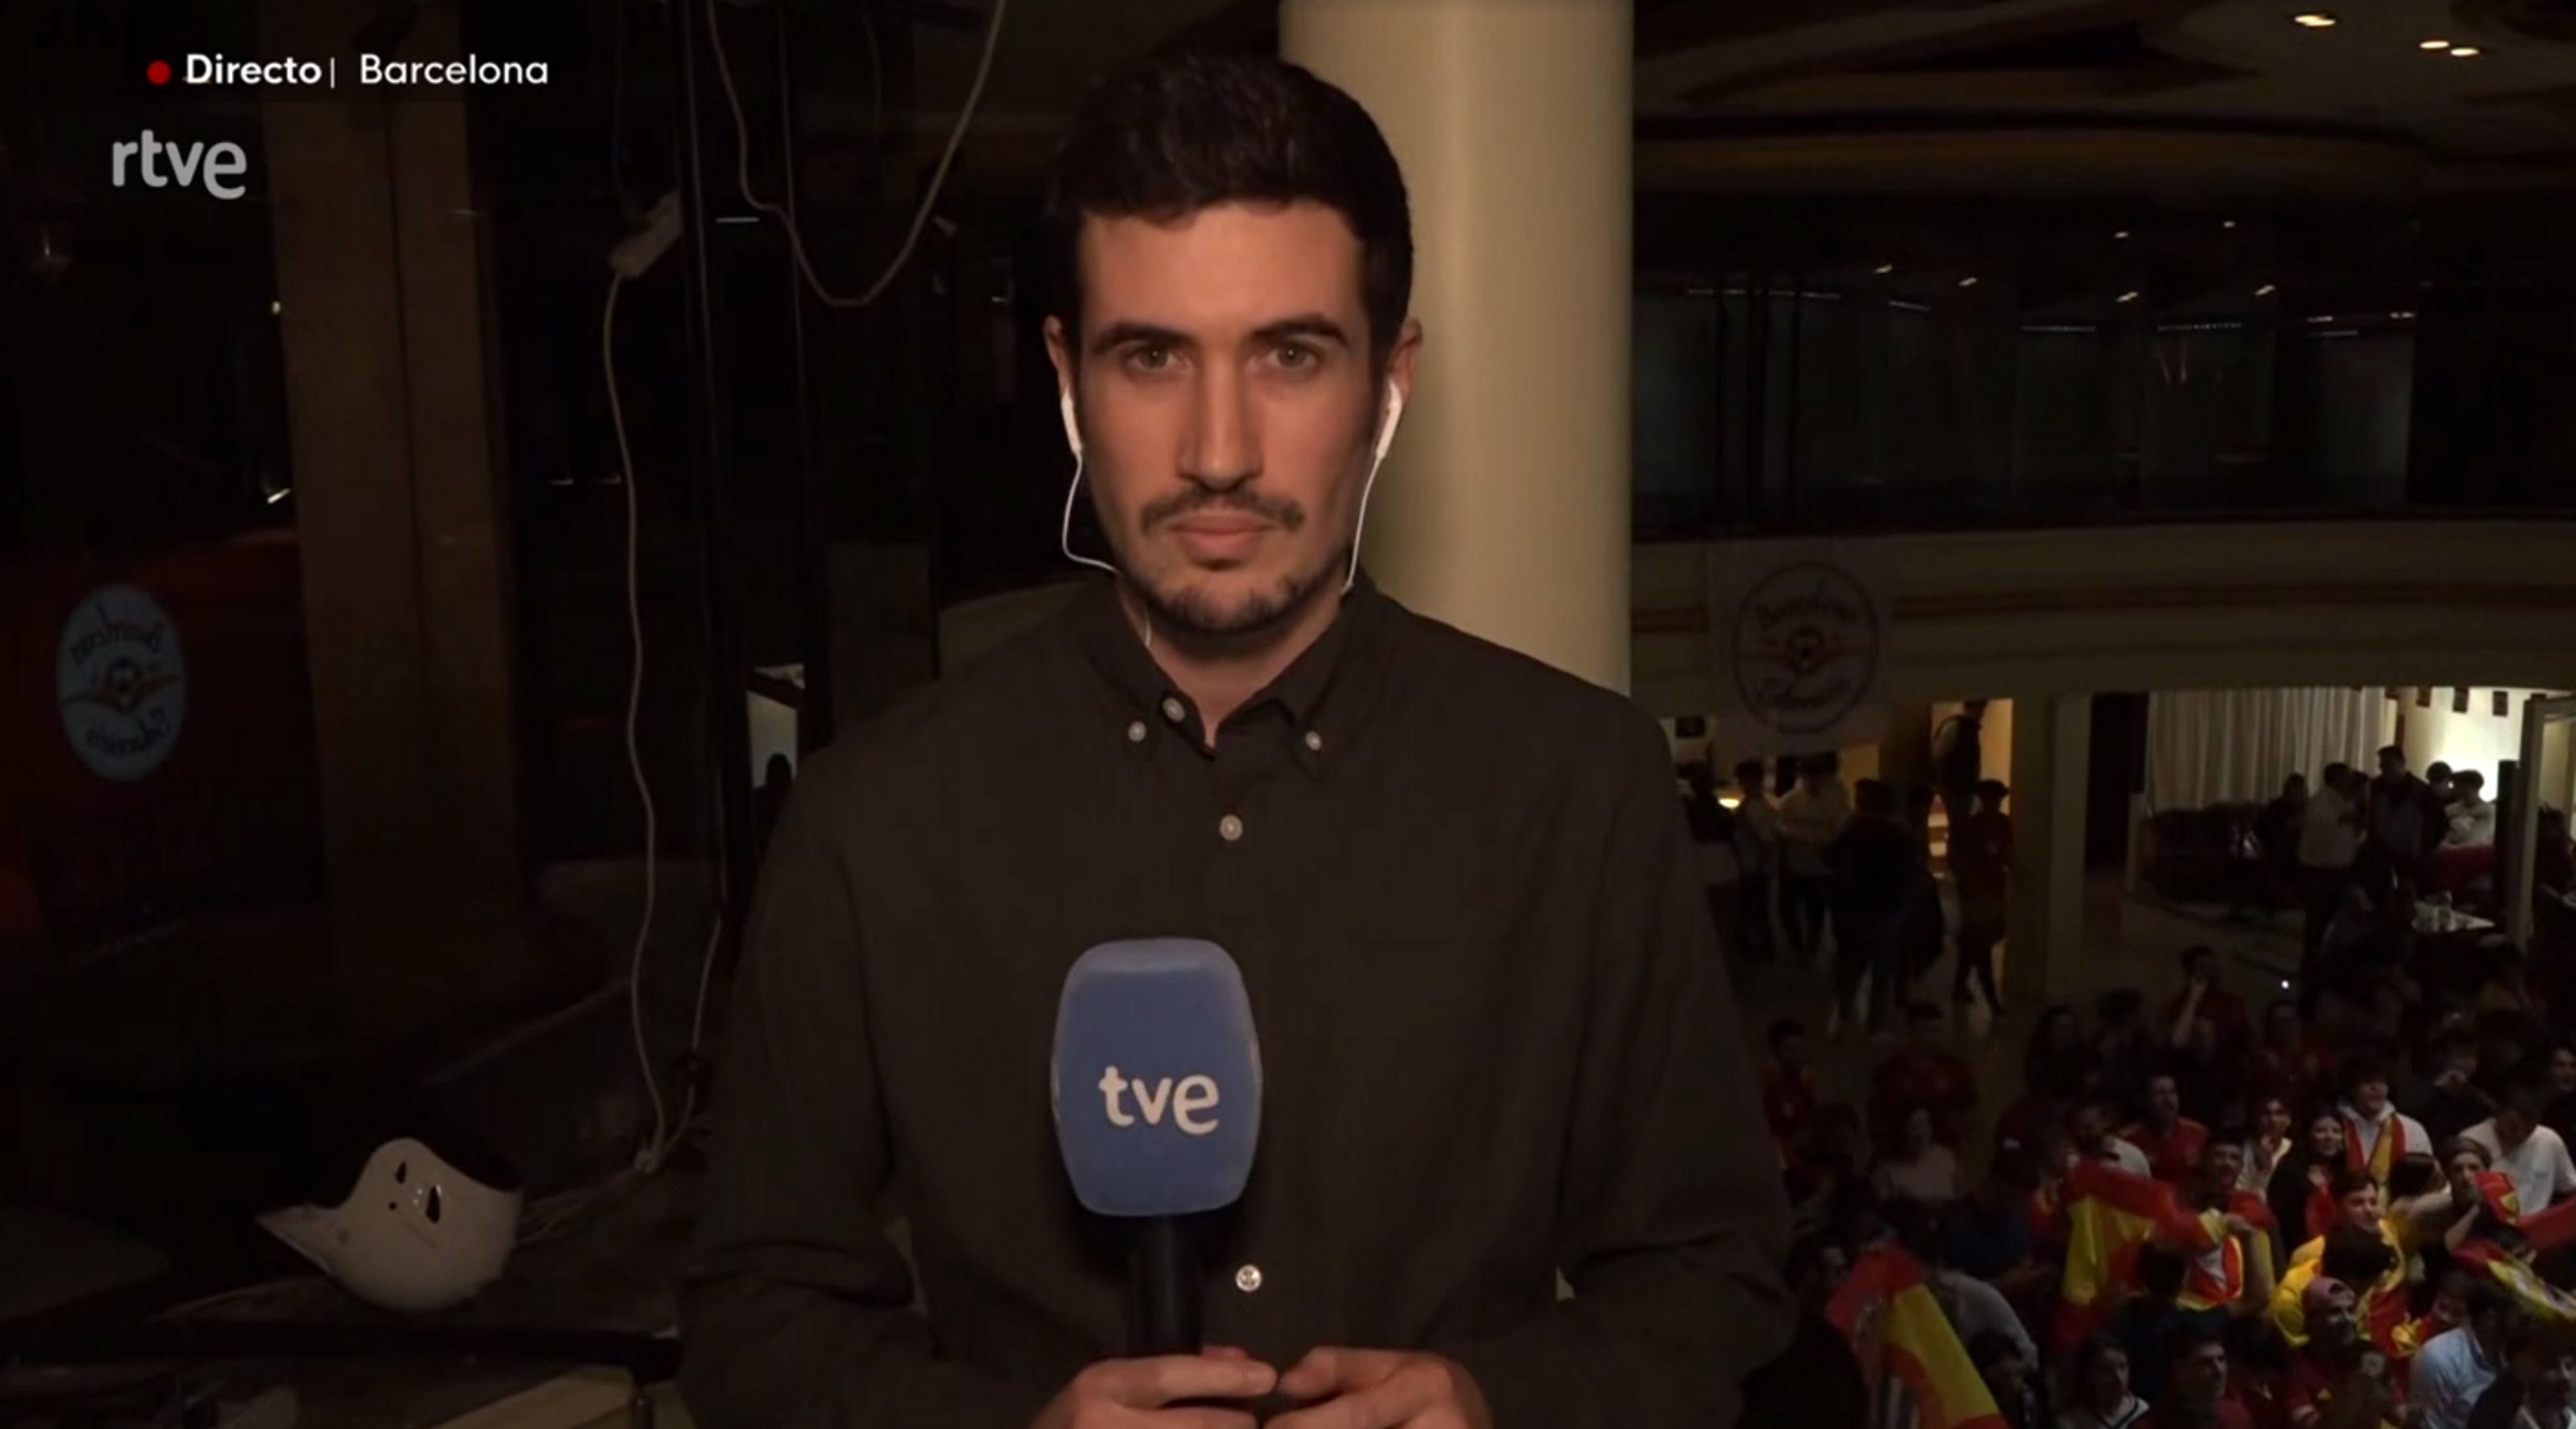 Ridículo del Telediario de TVE en Barcelona con la selección: "No cabe un alfiler"